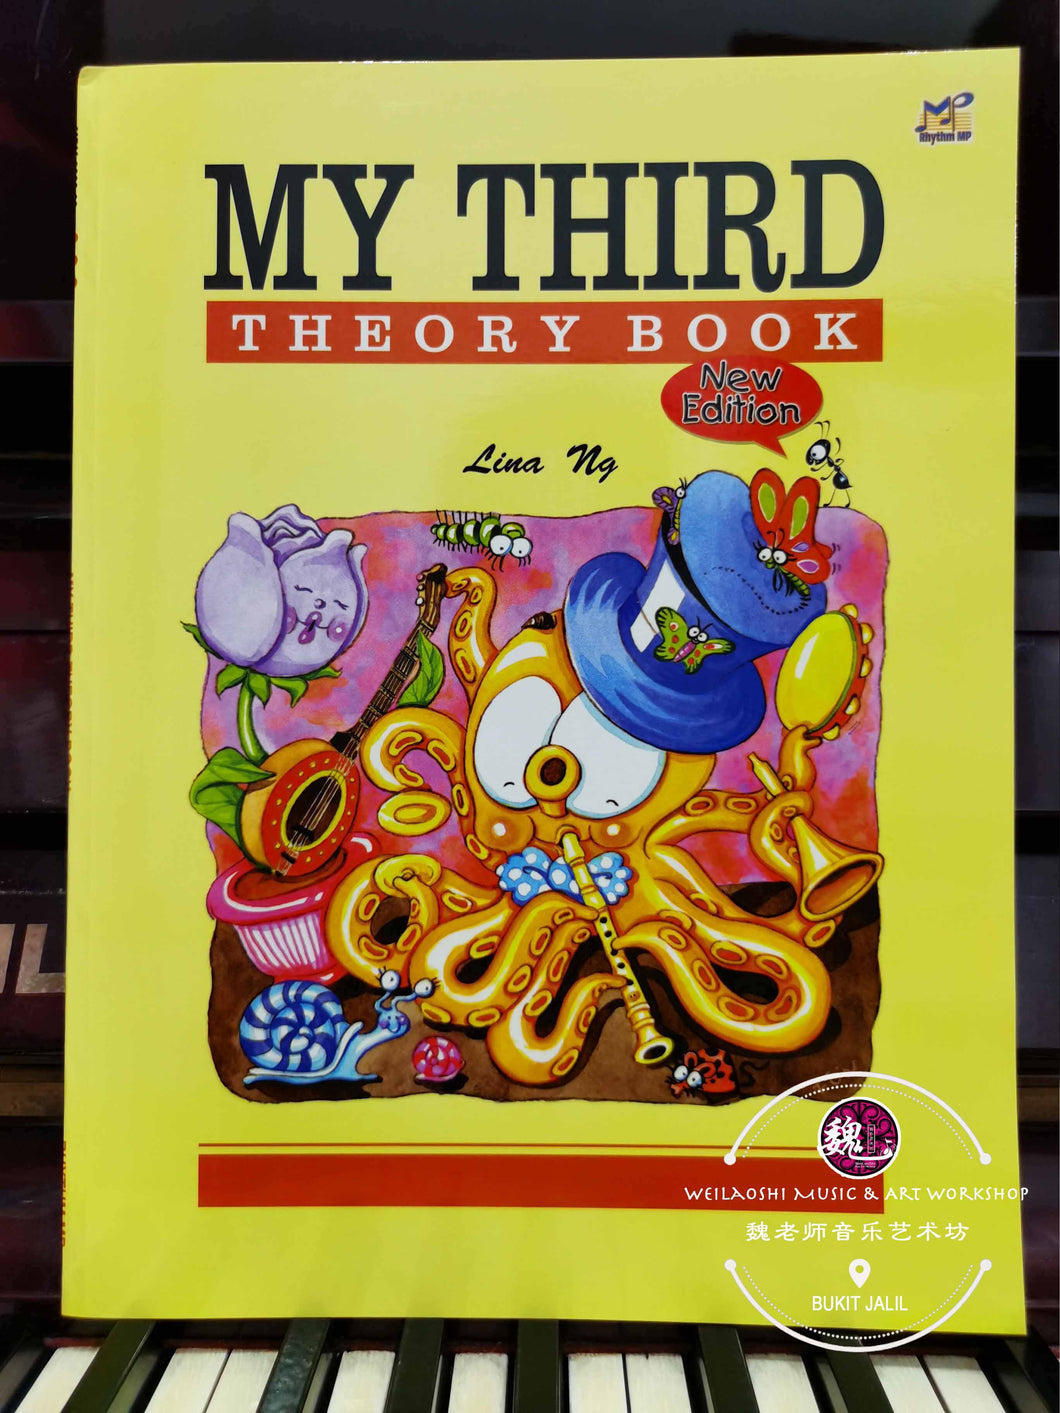 My Third Theory Book New Edition by Lina Ng